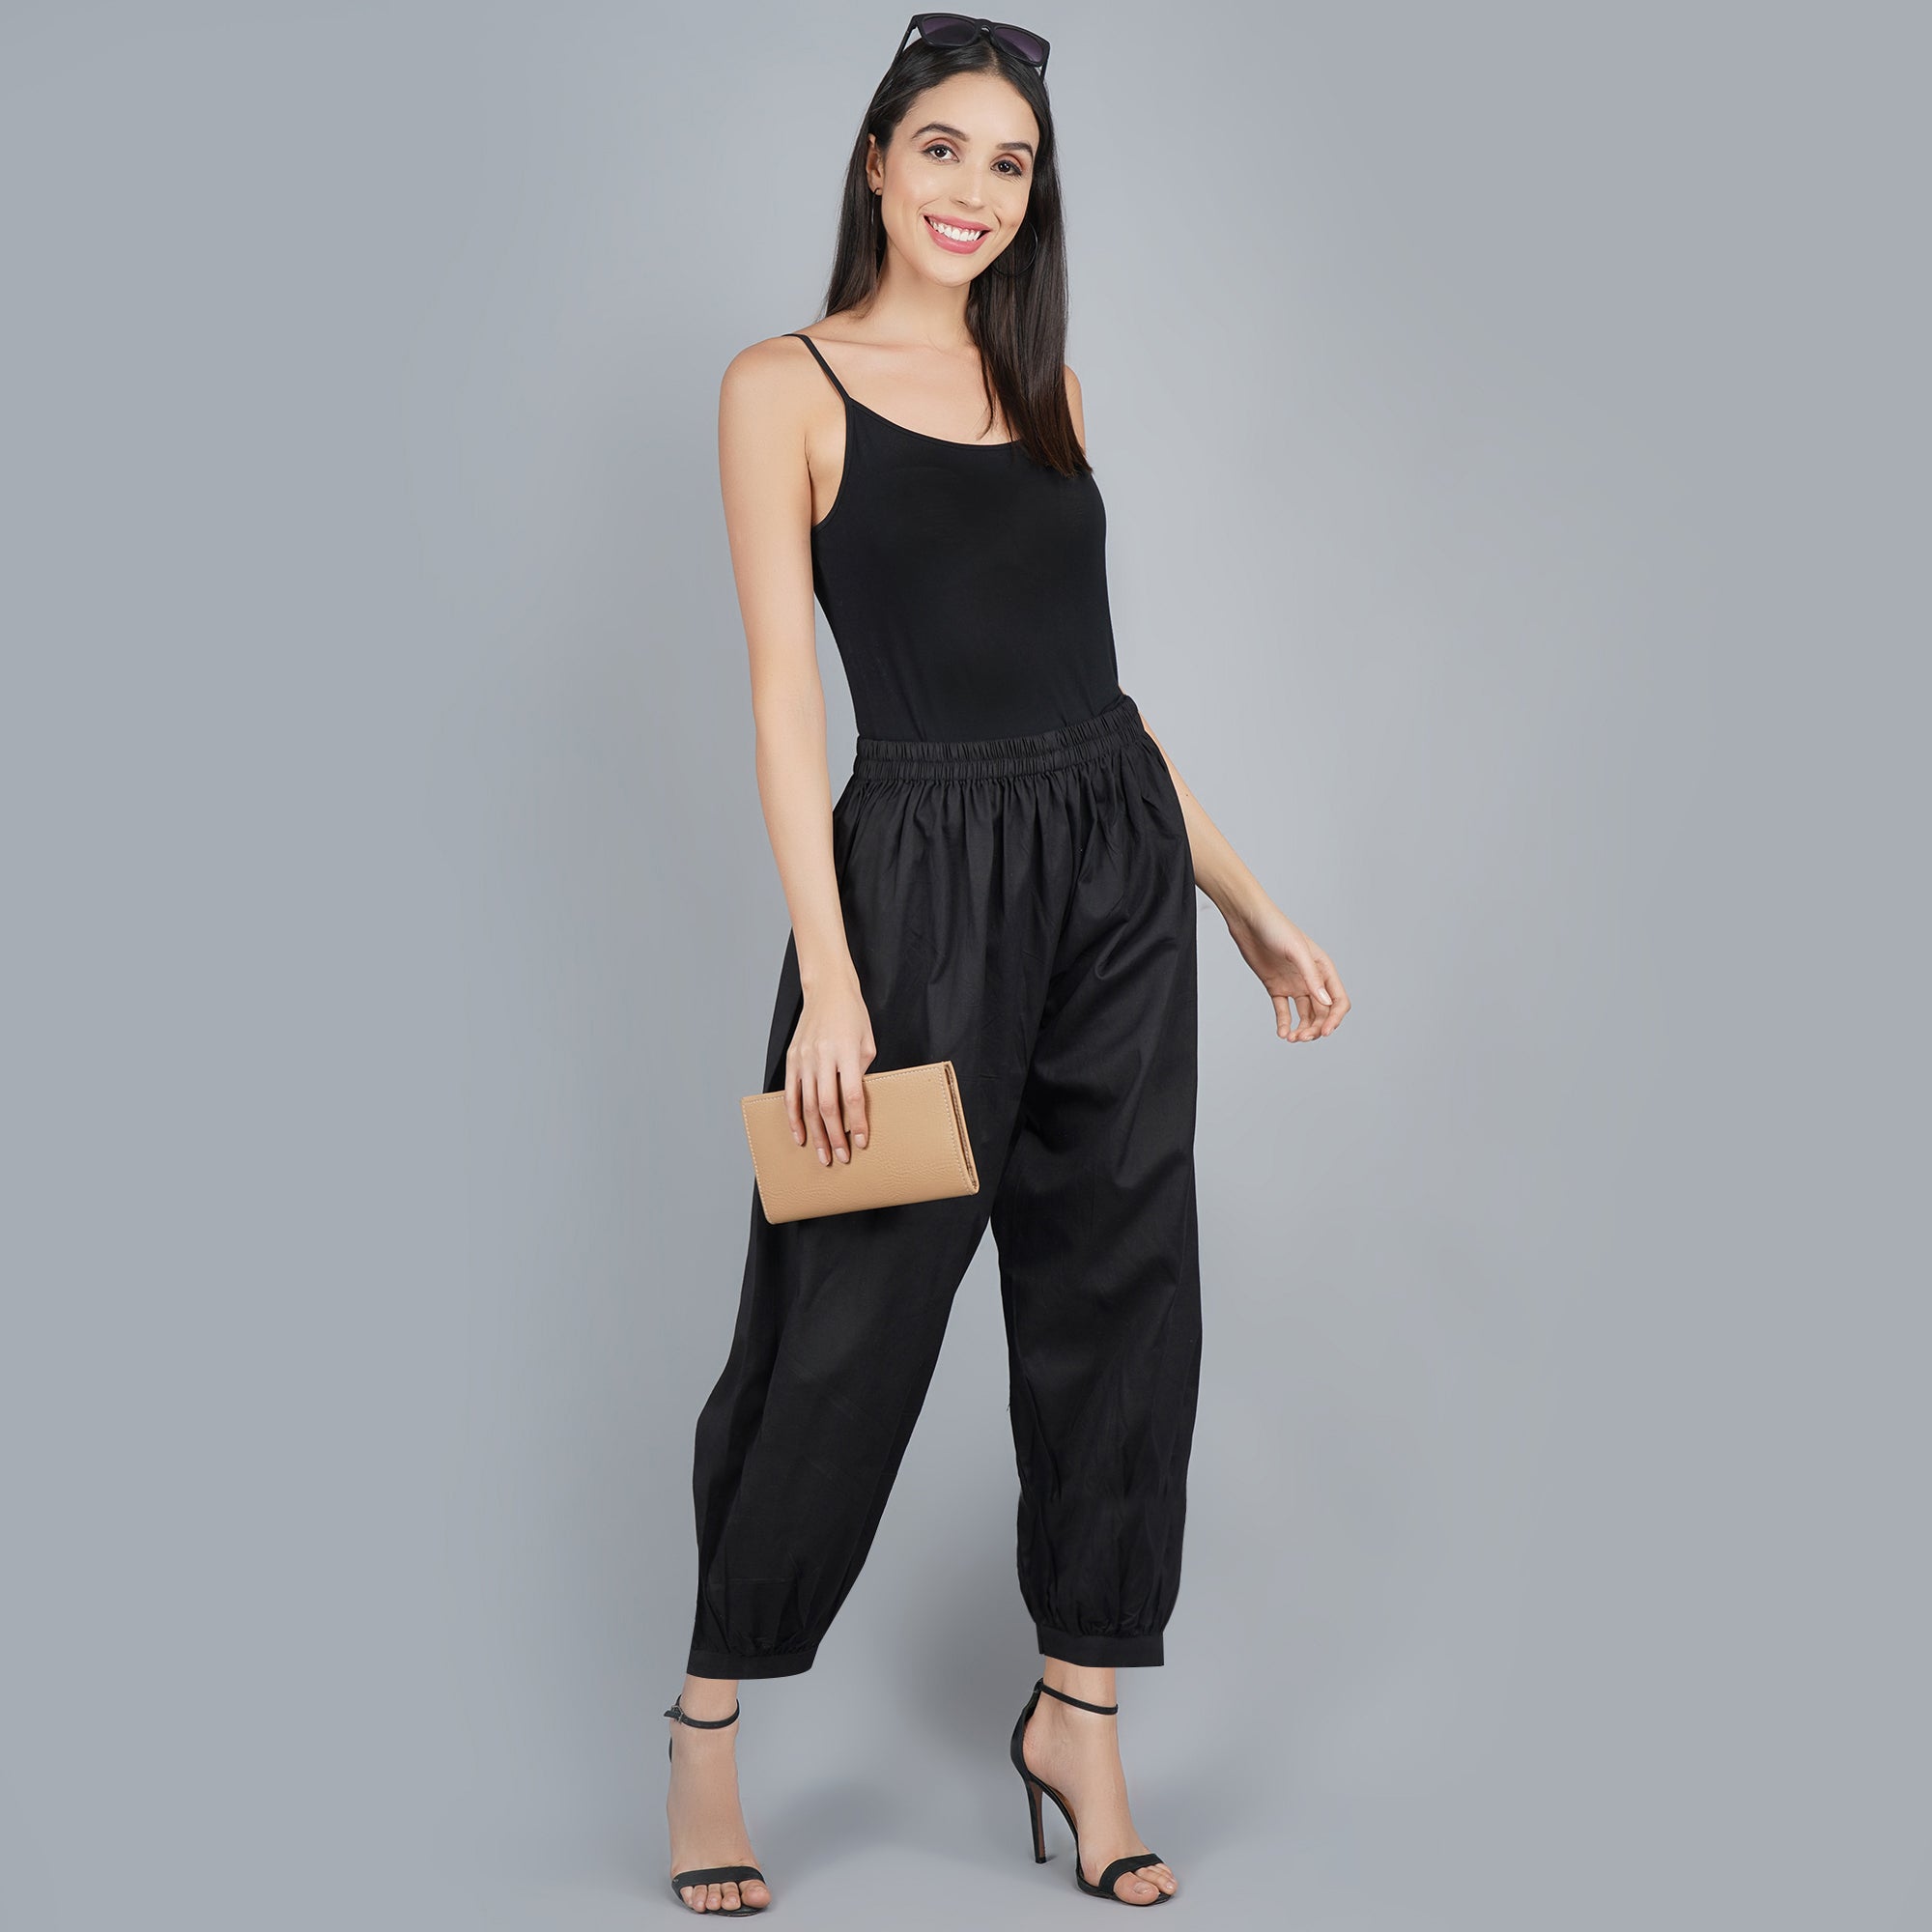 Dalia black cotton, spandex blend cropped pant | Cropped pants, Black cotton,  Pants